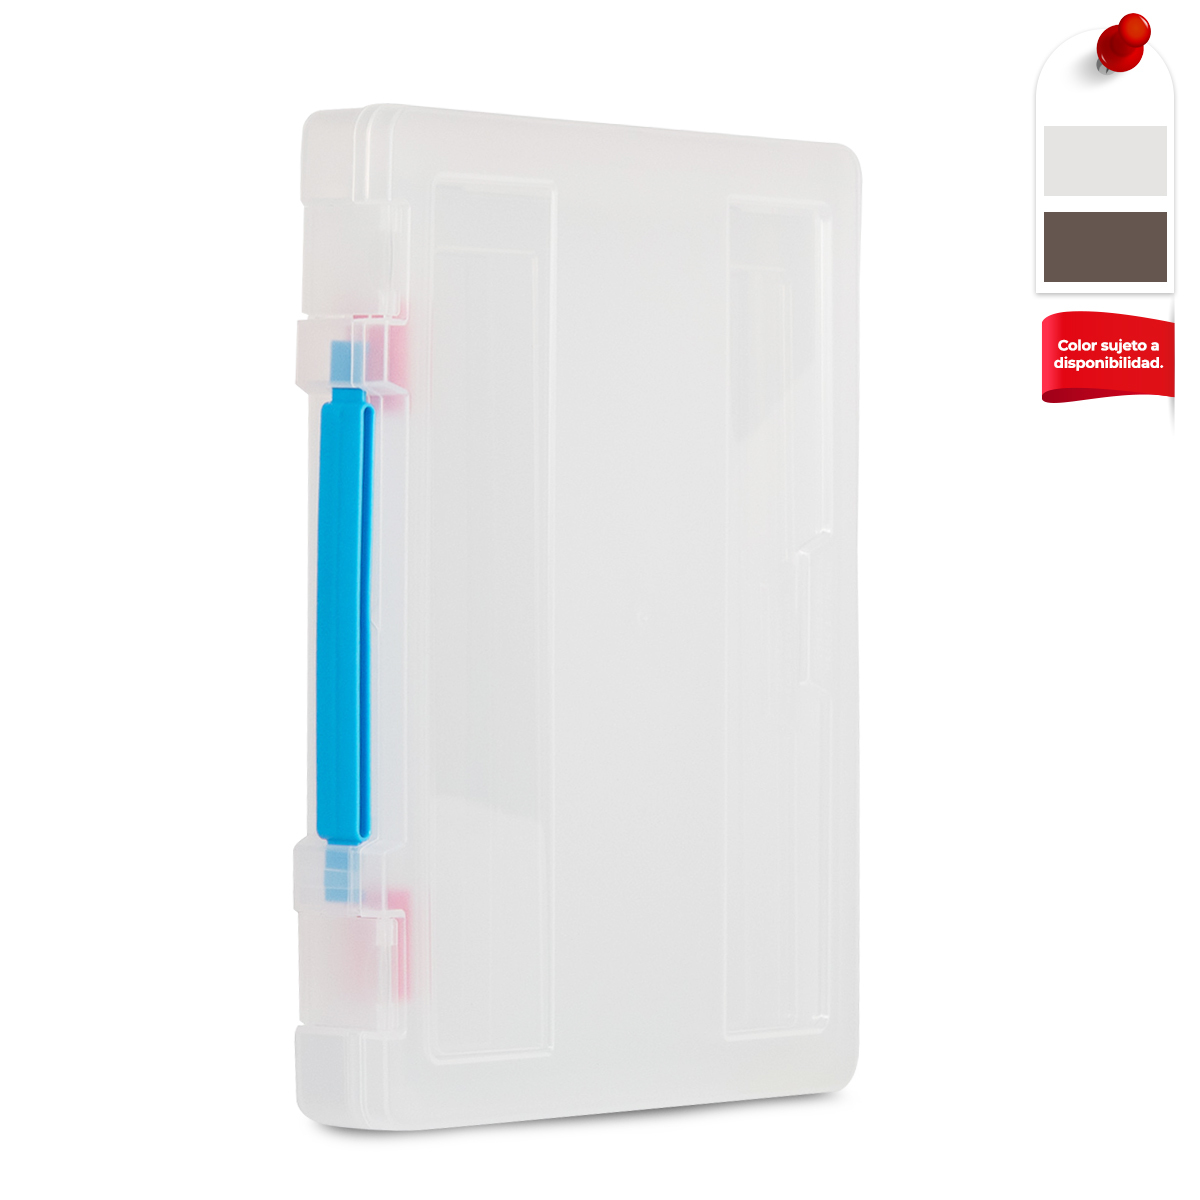 Caja de Plástico Portadocumentos Office Depot / Carta y Oficio / Transparente / 2 piezas